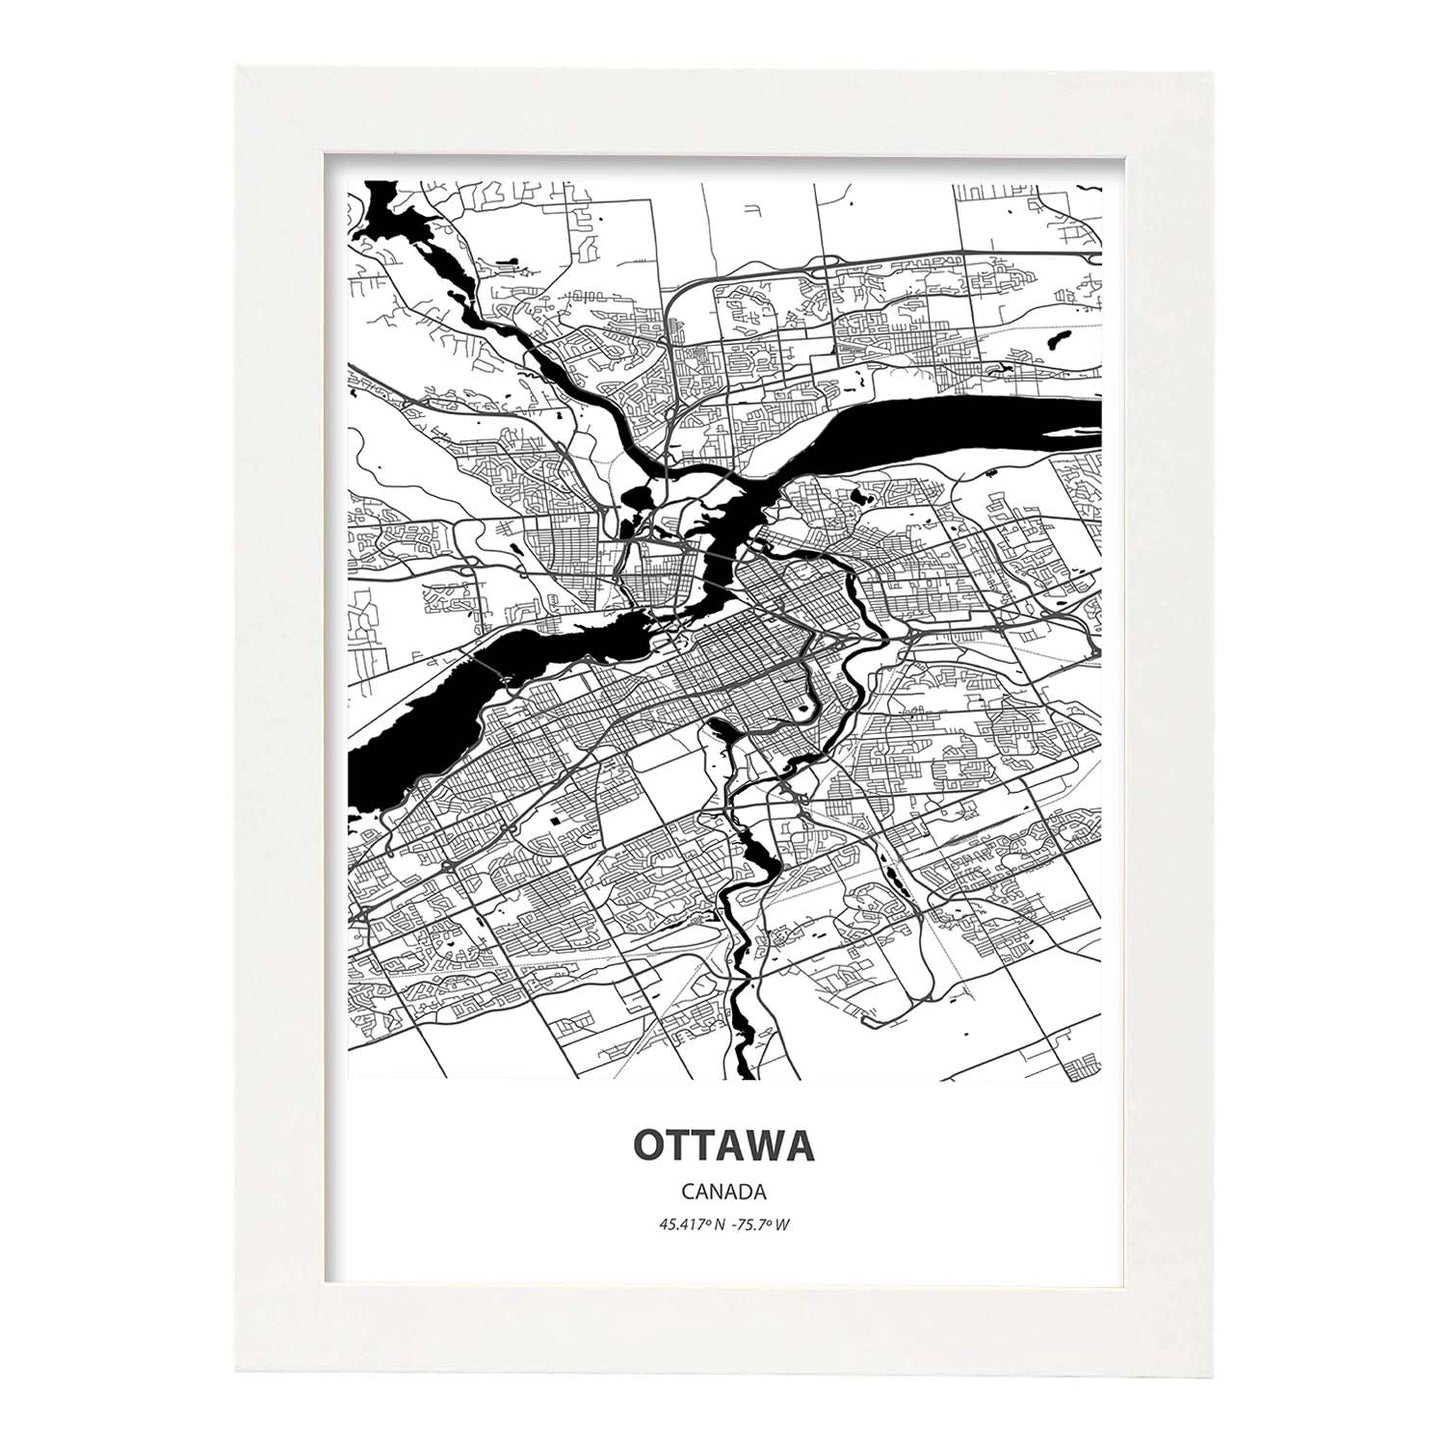 Poster con mapa de Ottawa - Canada. Láminas de ciudades de Canada con mares y ríos en color negro.-Artwork-Nacnic-A4-Marco Blanco-Nacnic Estudio SL